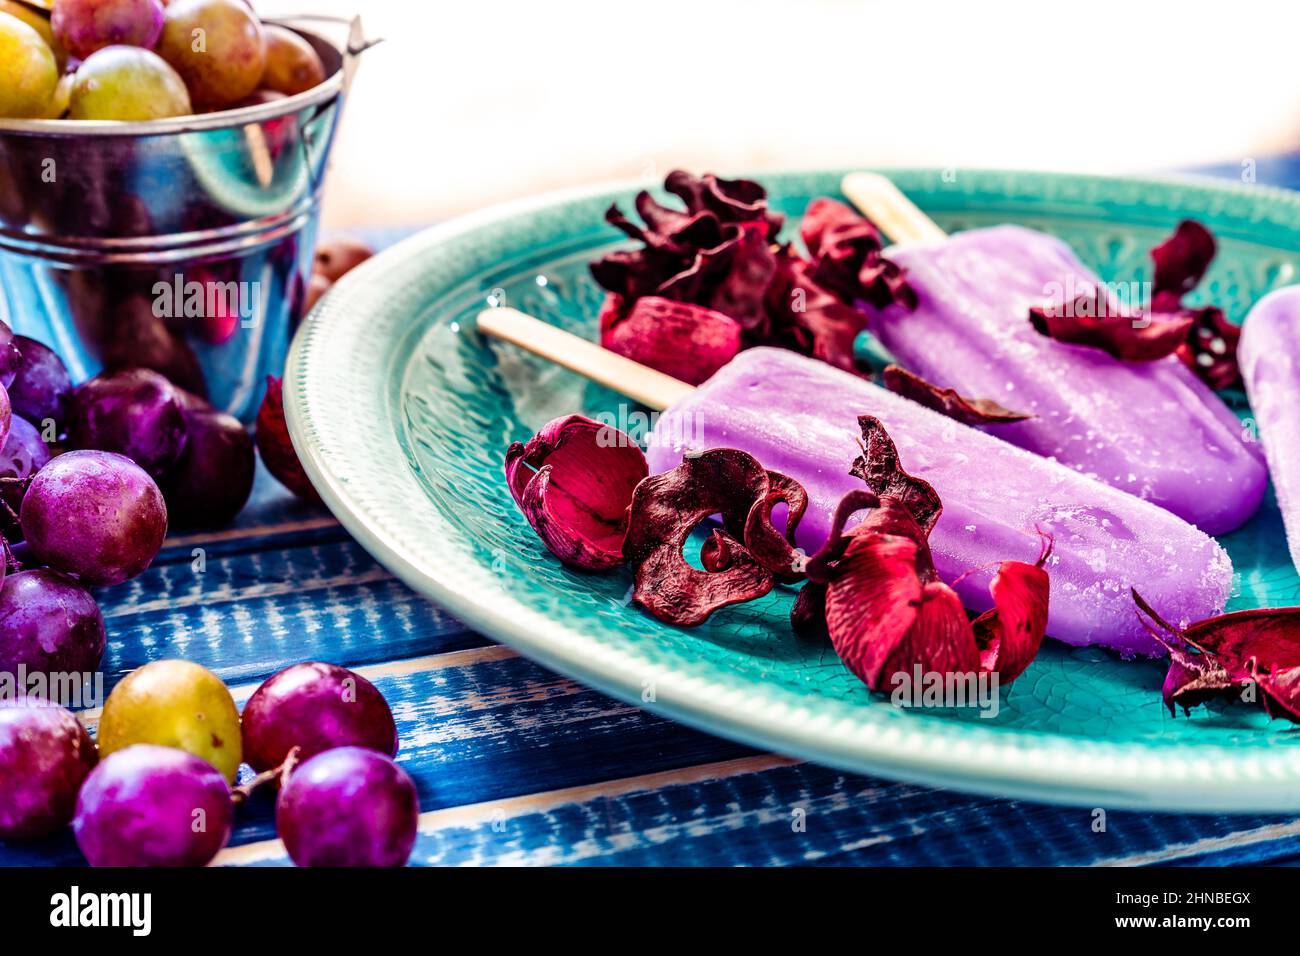 Ein Traubeneis im Lollipop-Stil auf einem Stock auf einem Vintage-Teller auf einem hellblauen Holztisch. Konzept der natürlichen und gesunden Ernährung. Stockfoto